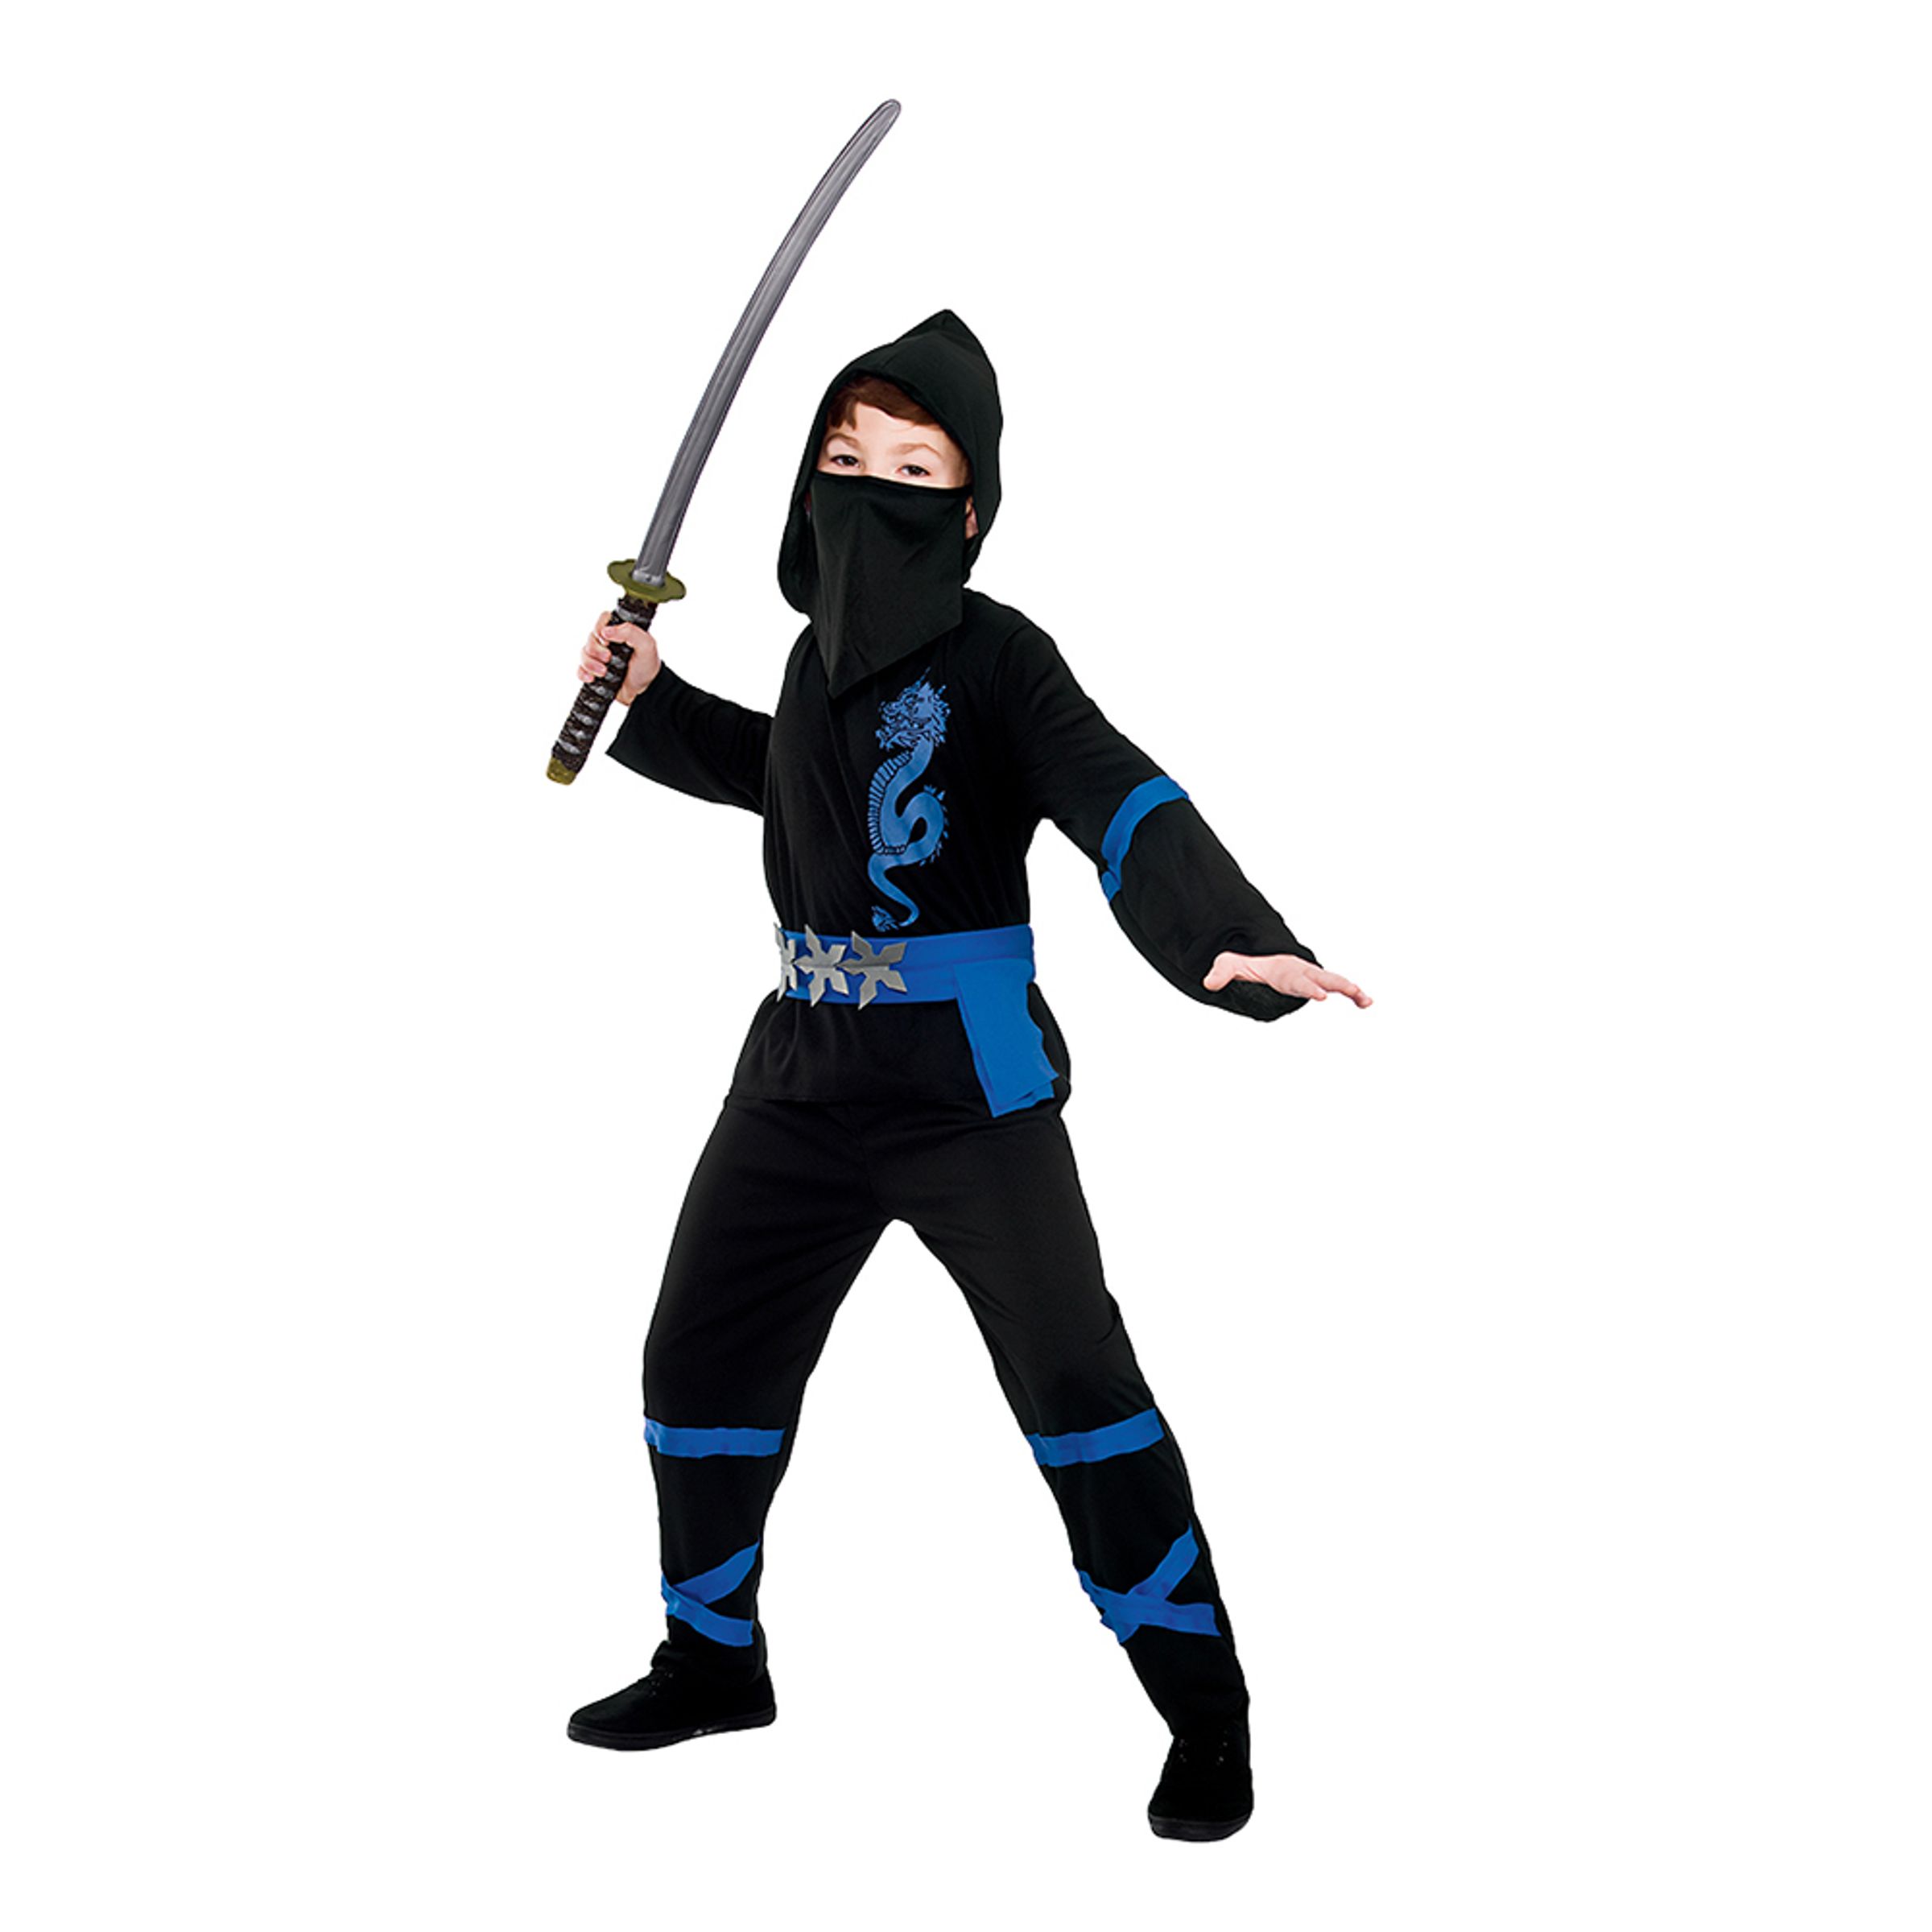 Svart/Blå Power Ninja Barn Maskeraddräkt - Small